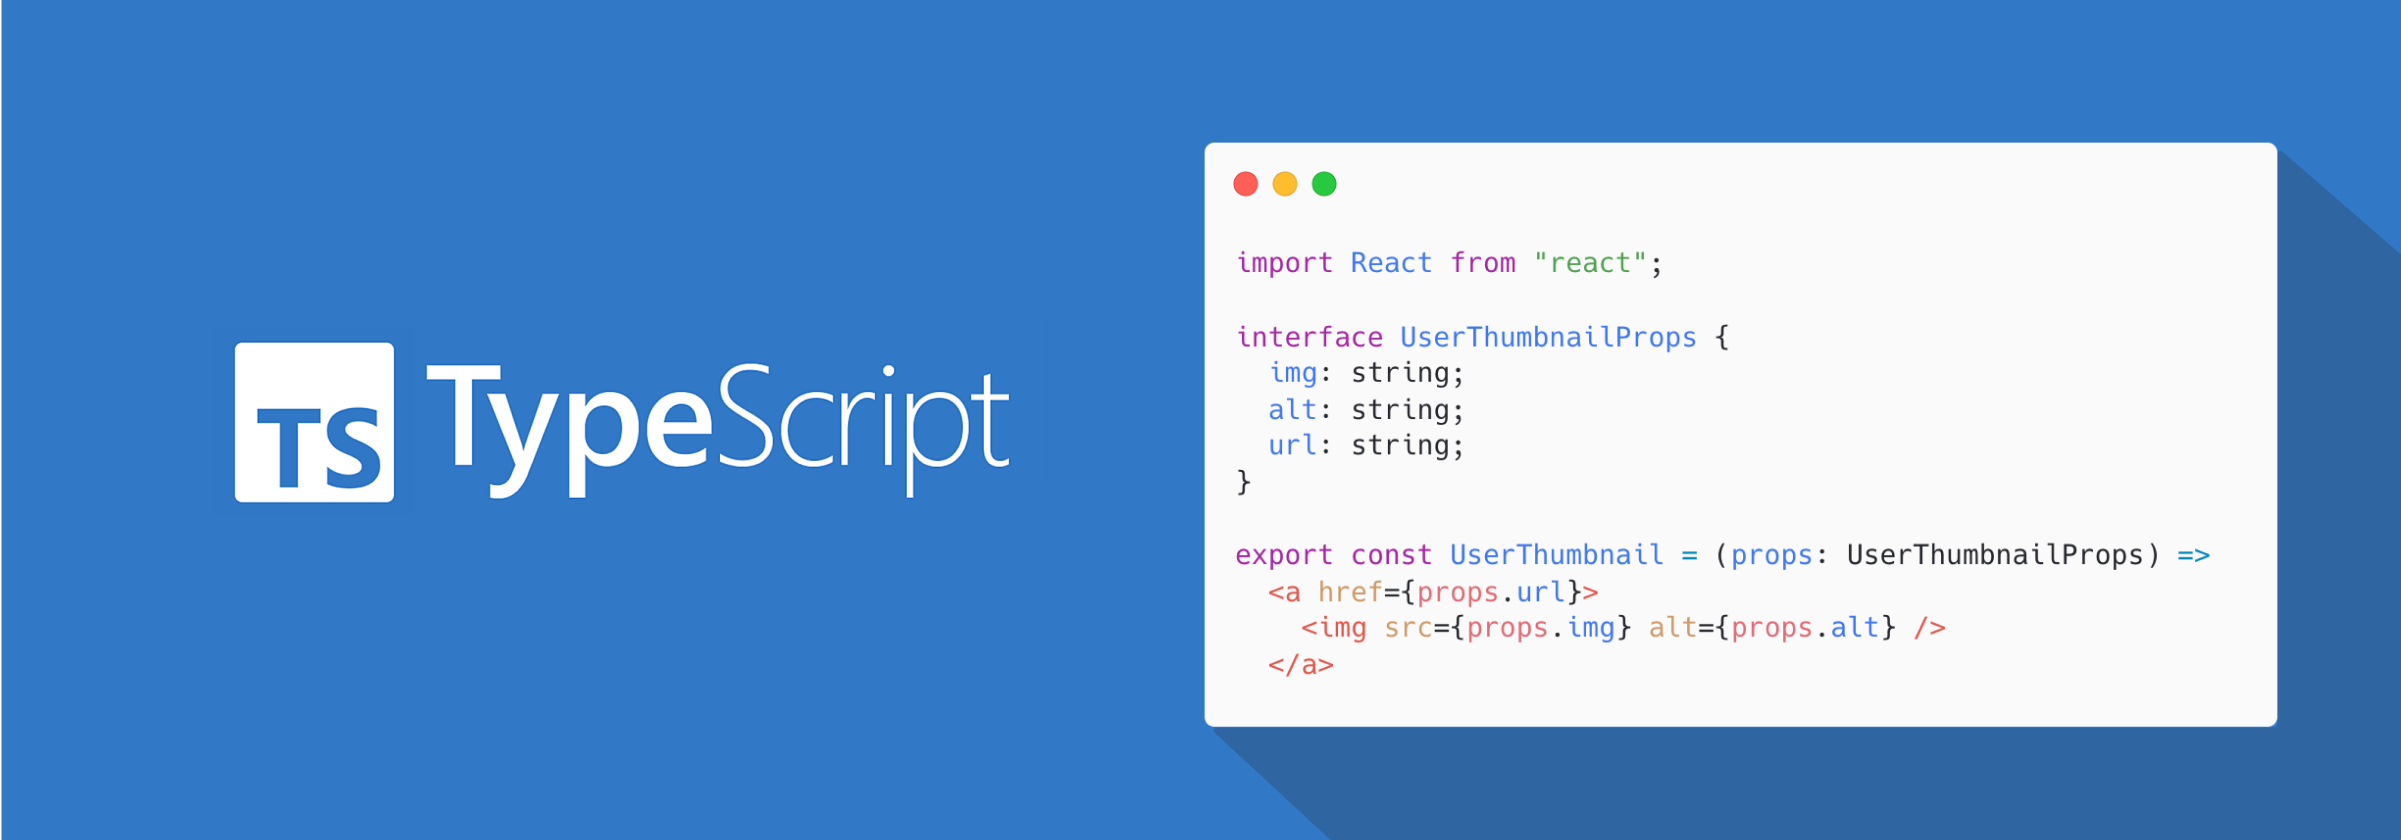 typescript-cover